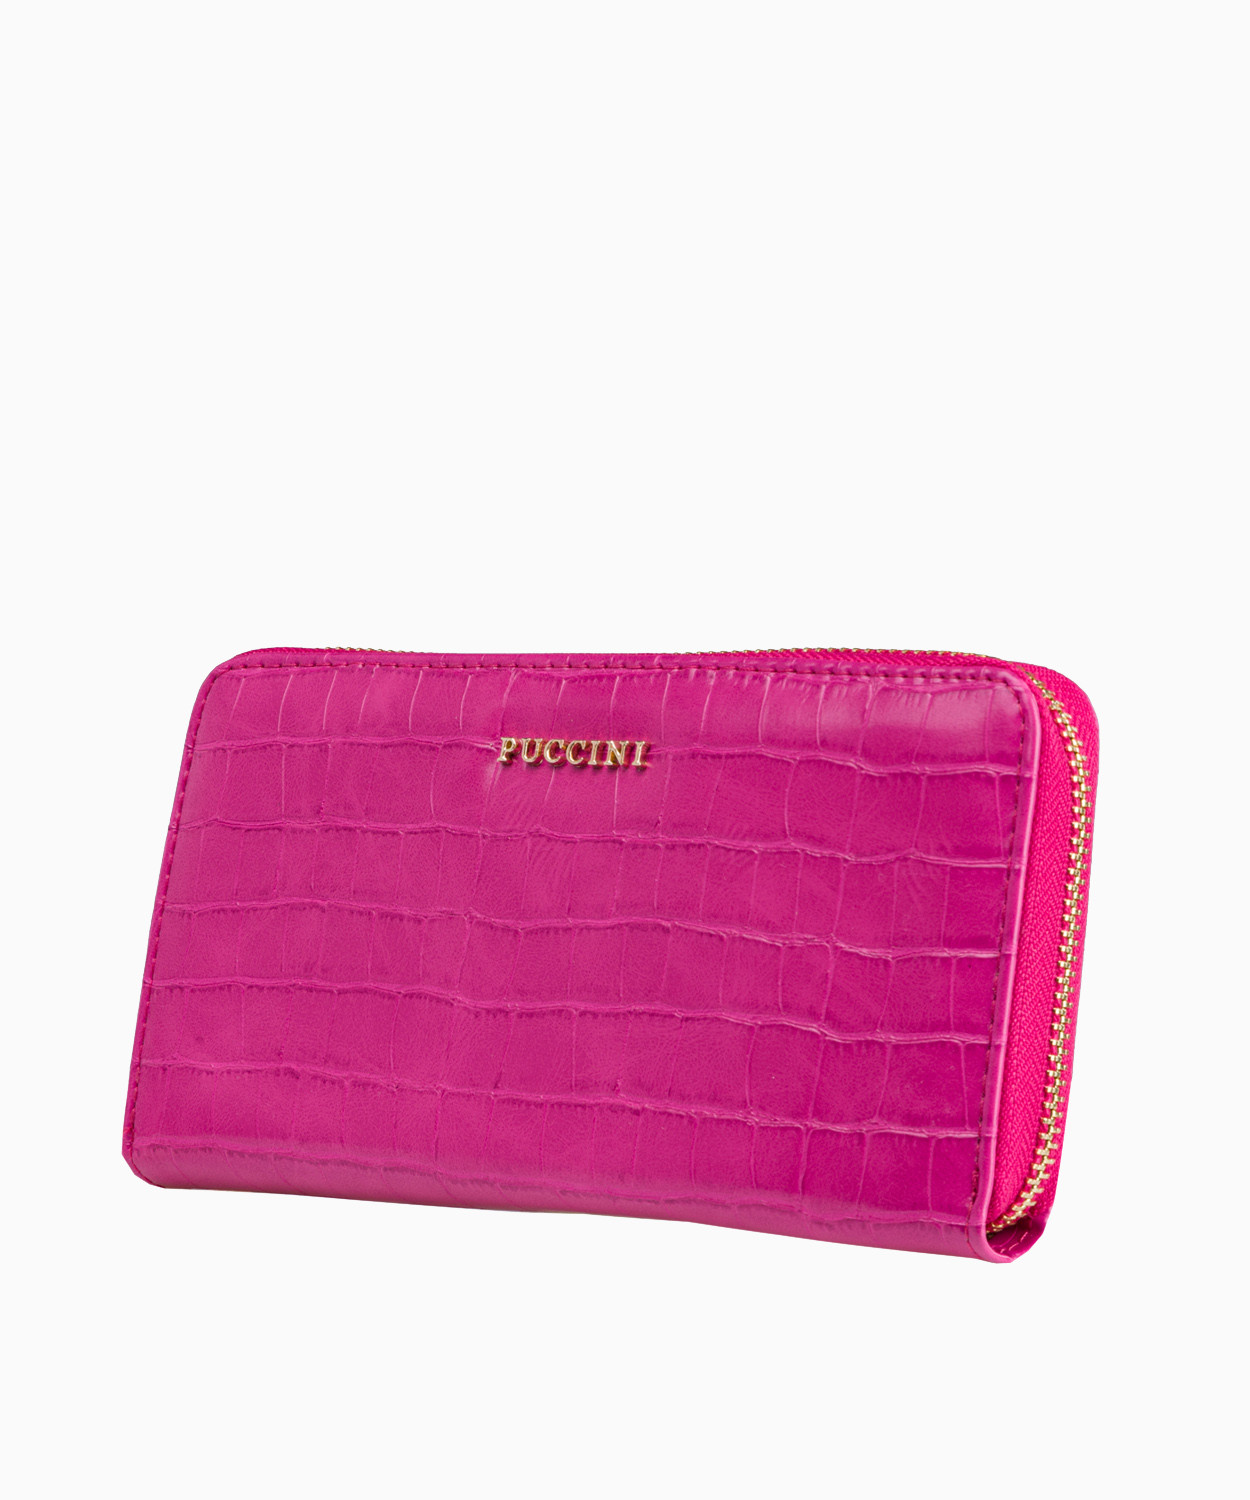 PUCCINI Duży różowy portfel damski o fakturze croco